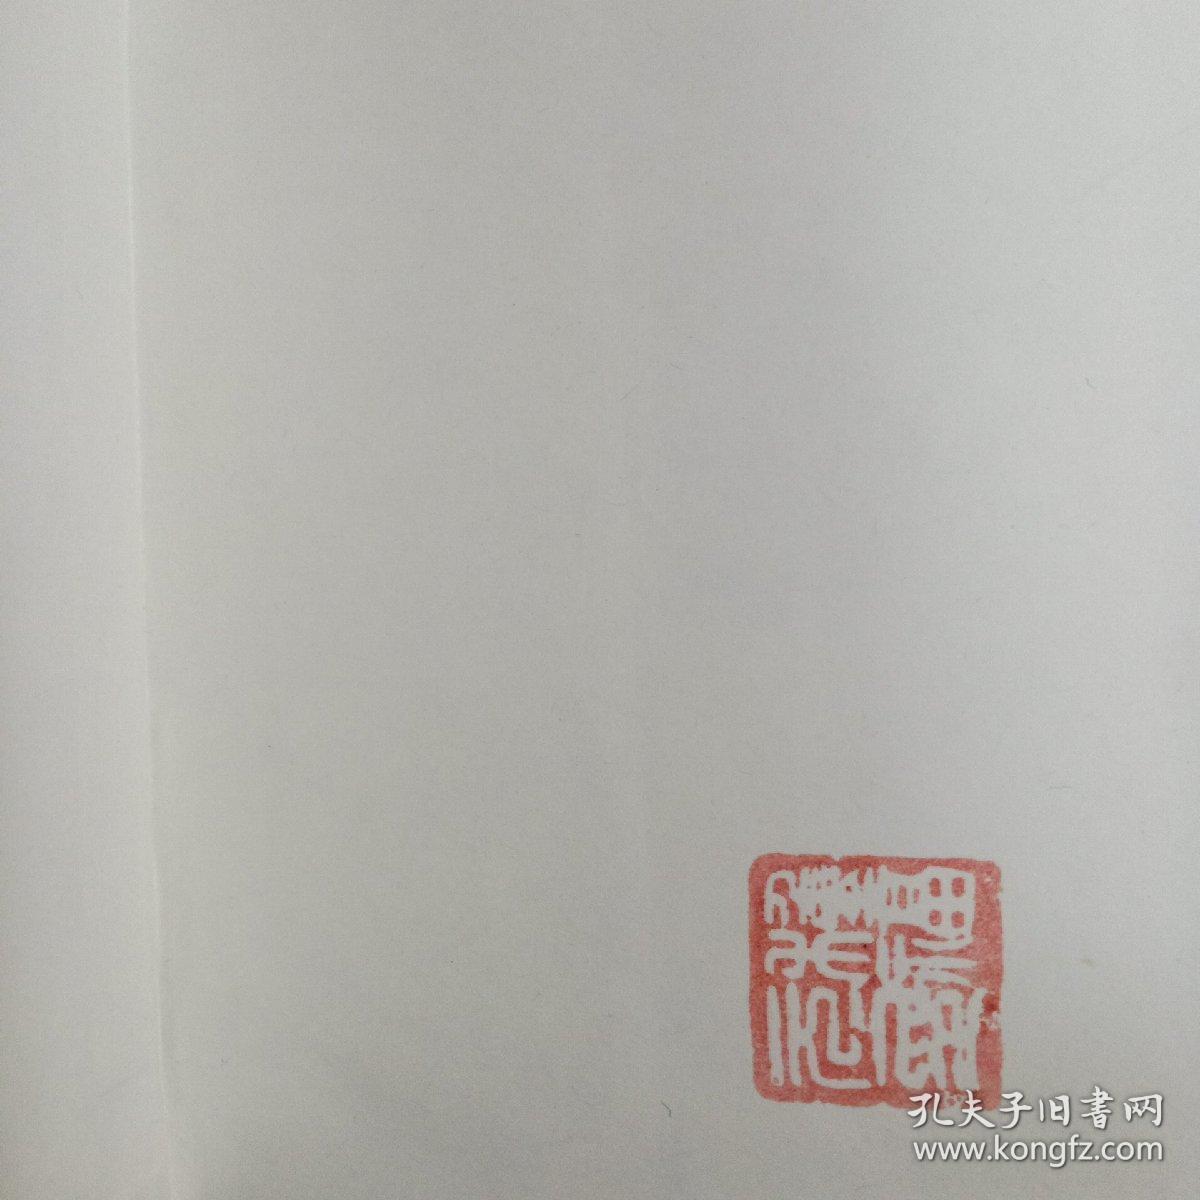 中国古旧书看报收藏交流指南。